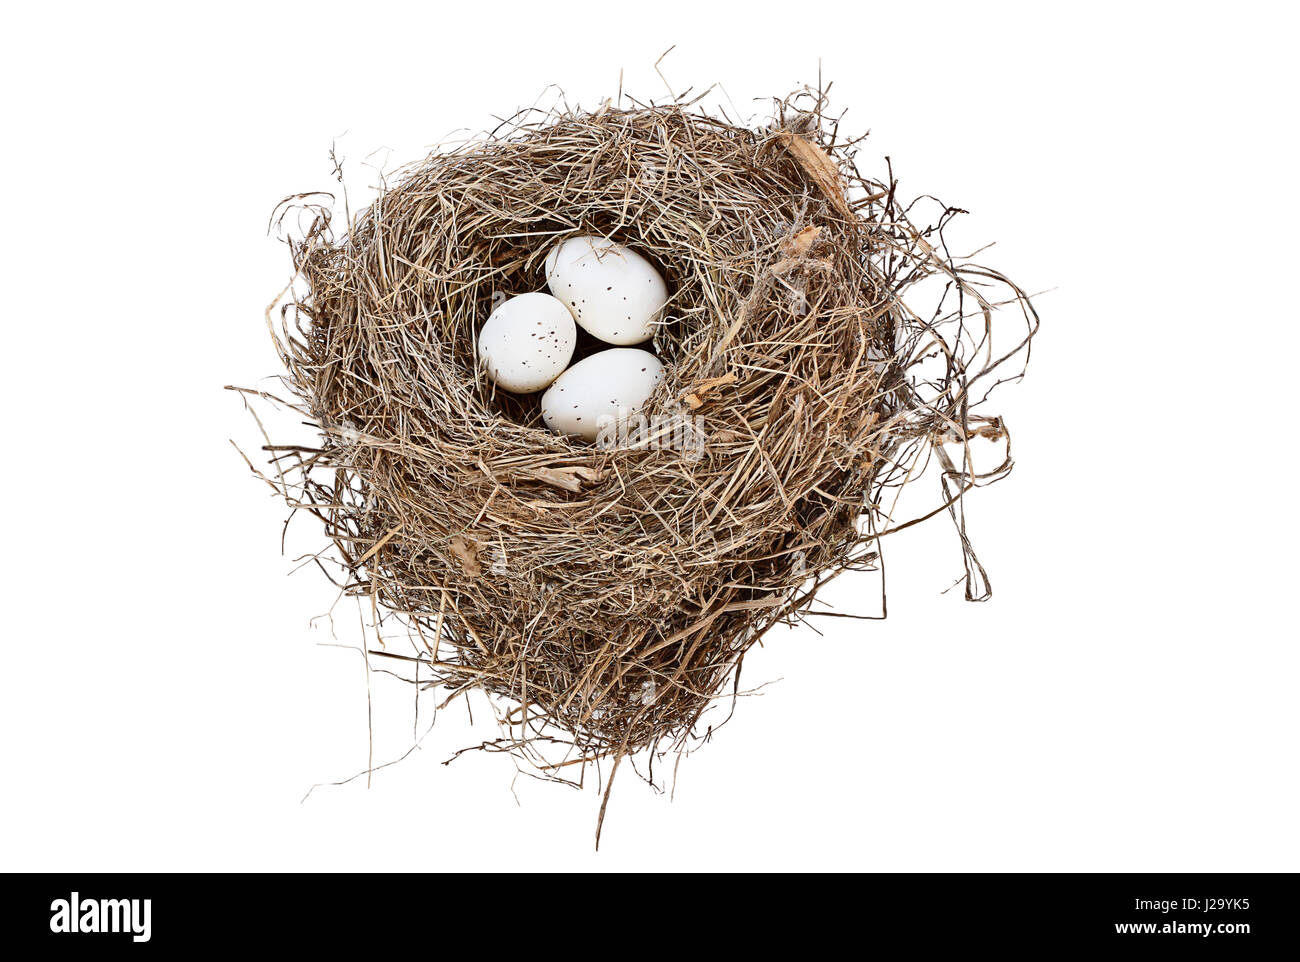 Isolate il nido di uccello con uova maculate su sfondo bianco. Immagine ripresa dal di sopra con una copia dello spazio. Foto Stock